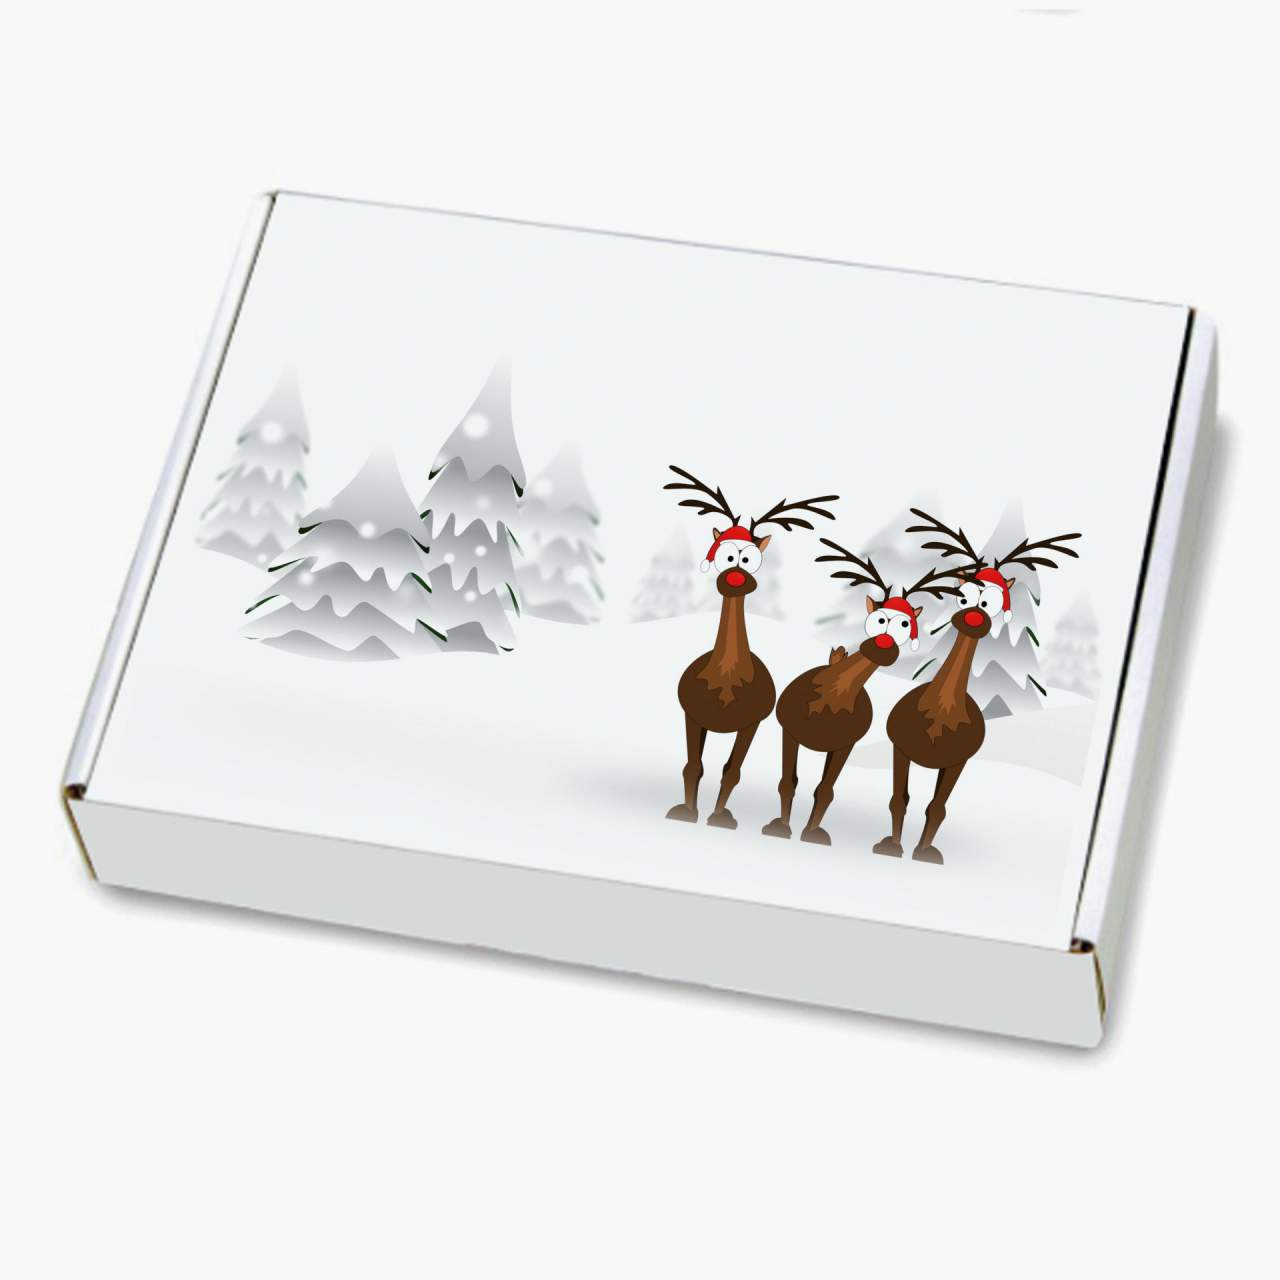 Weihnachtskarton mit Aufdruck - Rentiere im Schnee